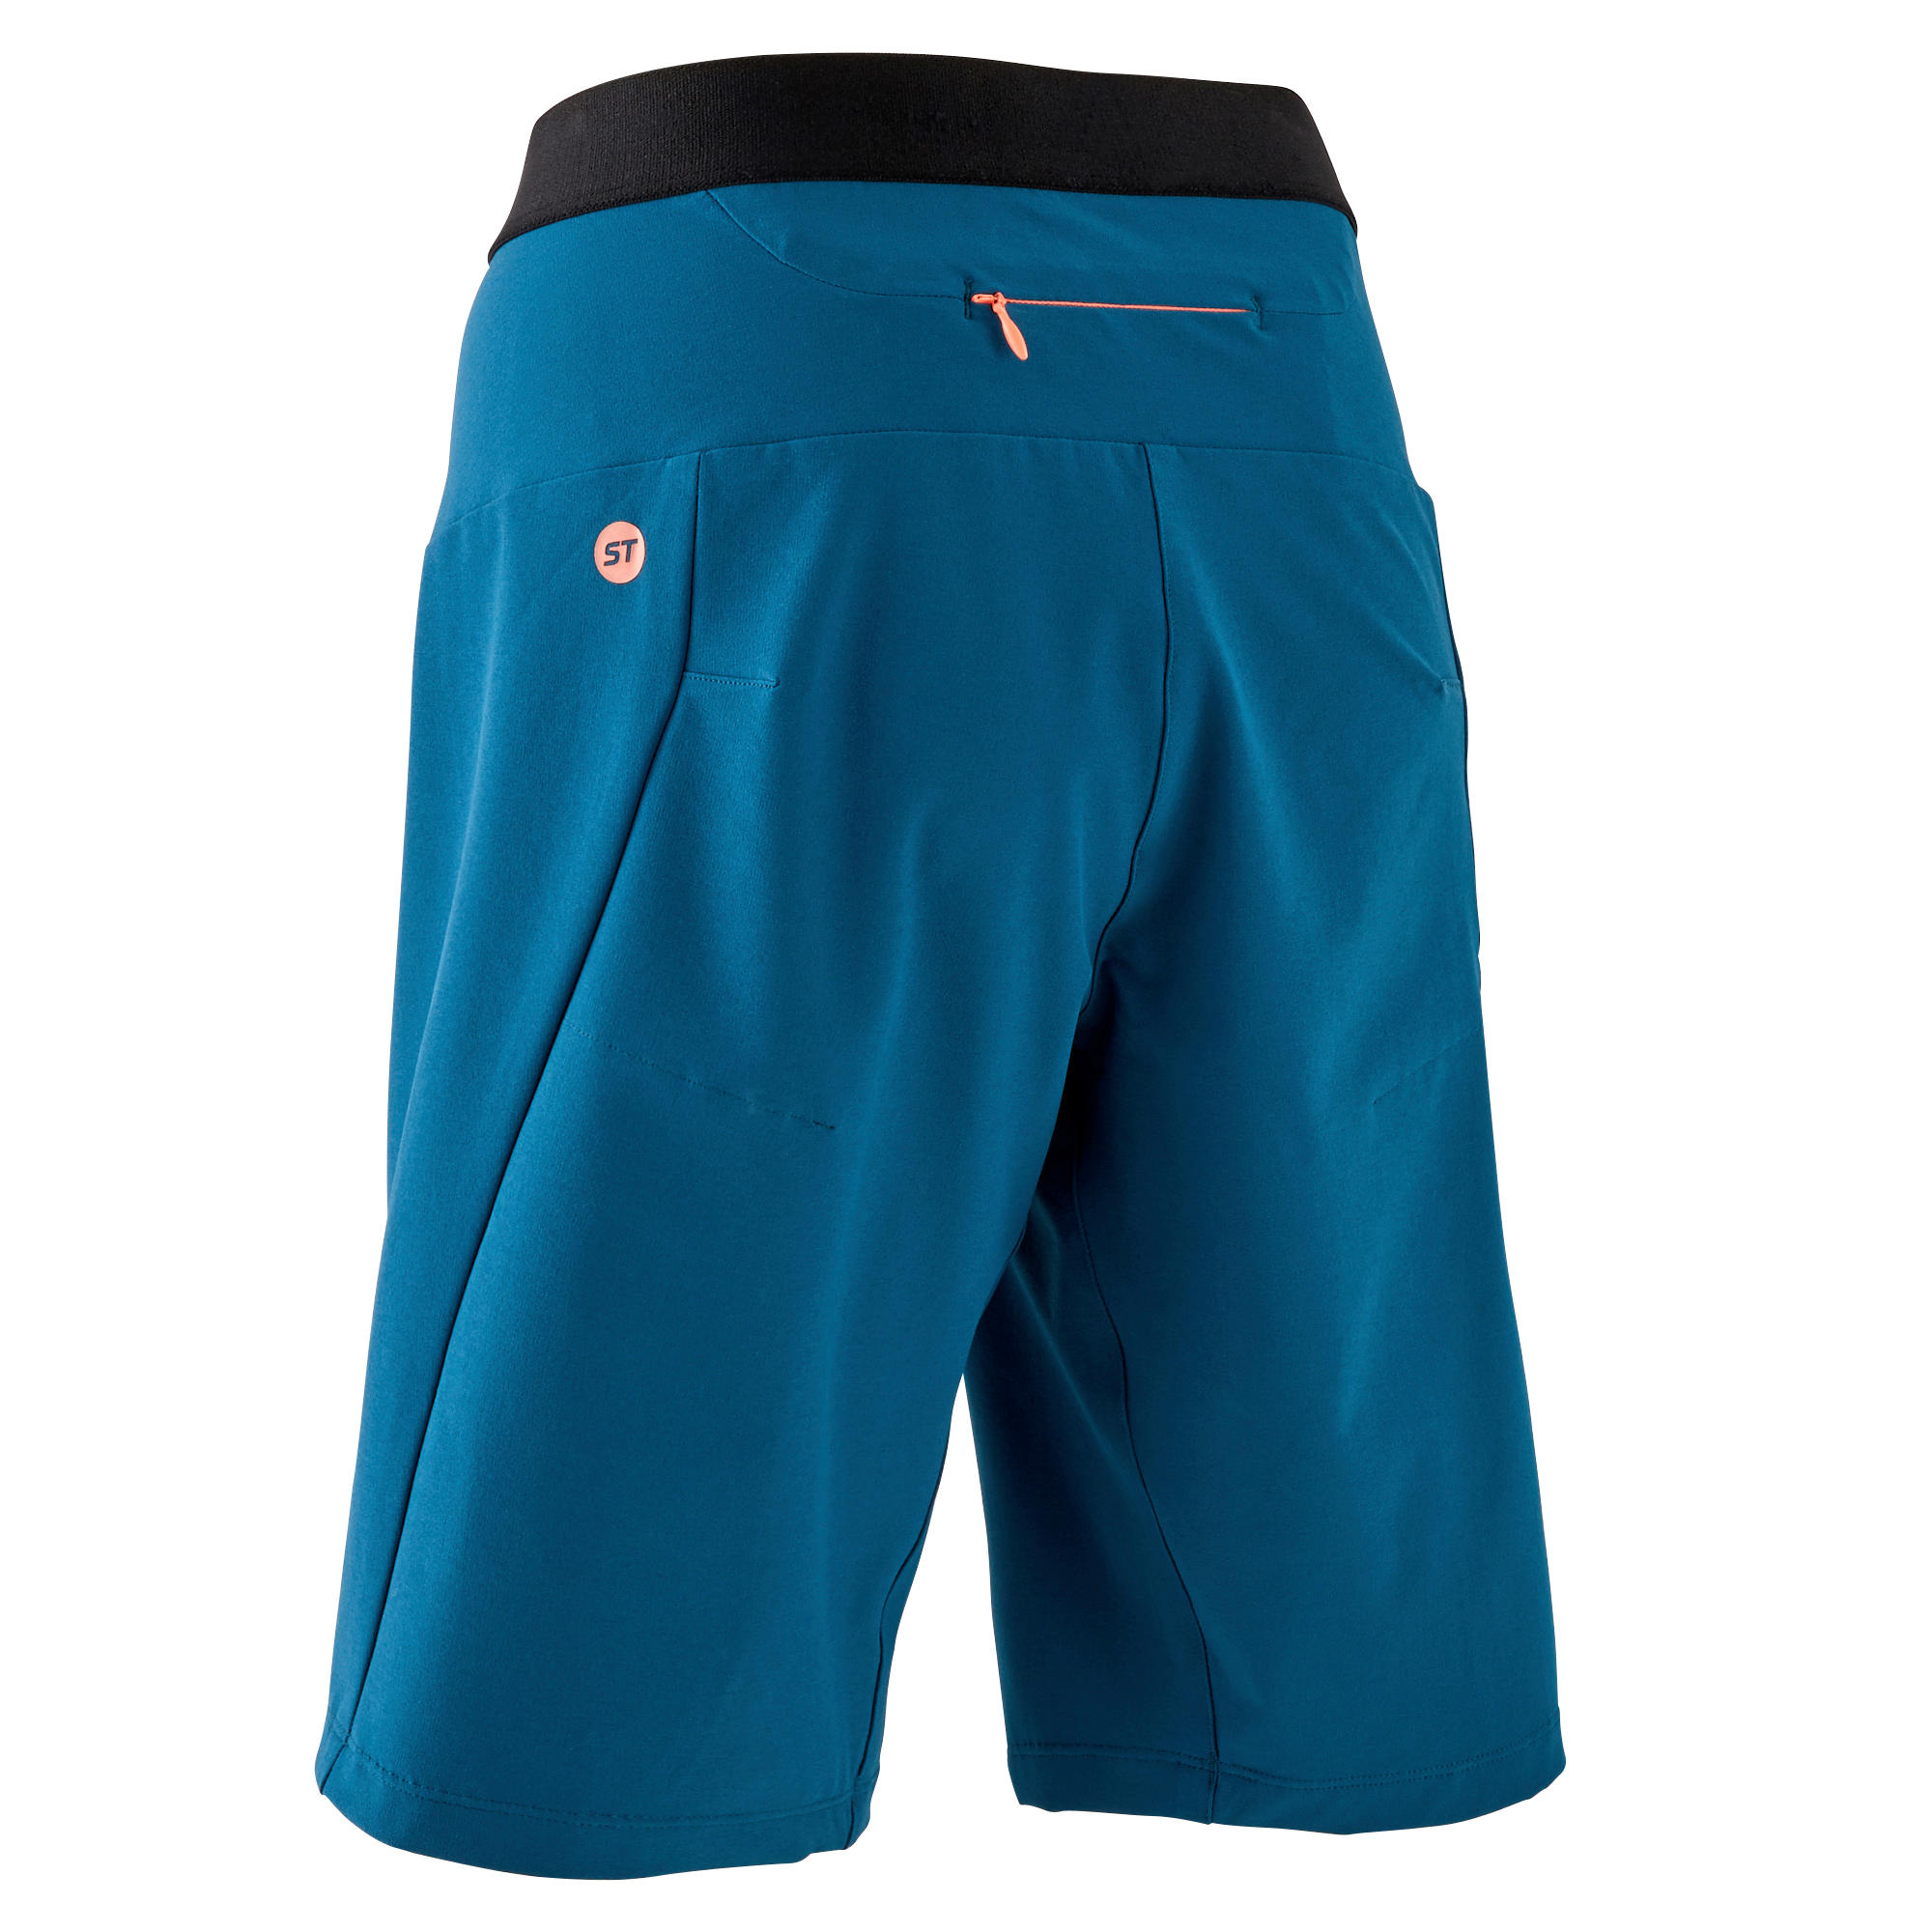 Women's Mountain Bike Shorts EXP 700 - Turquoise 10/11